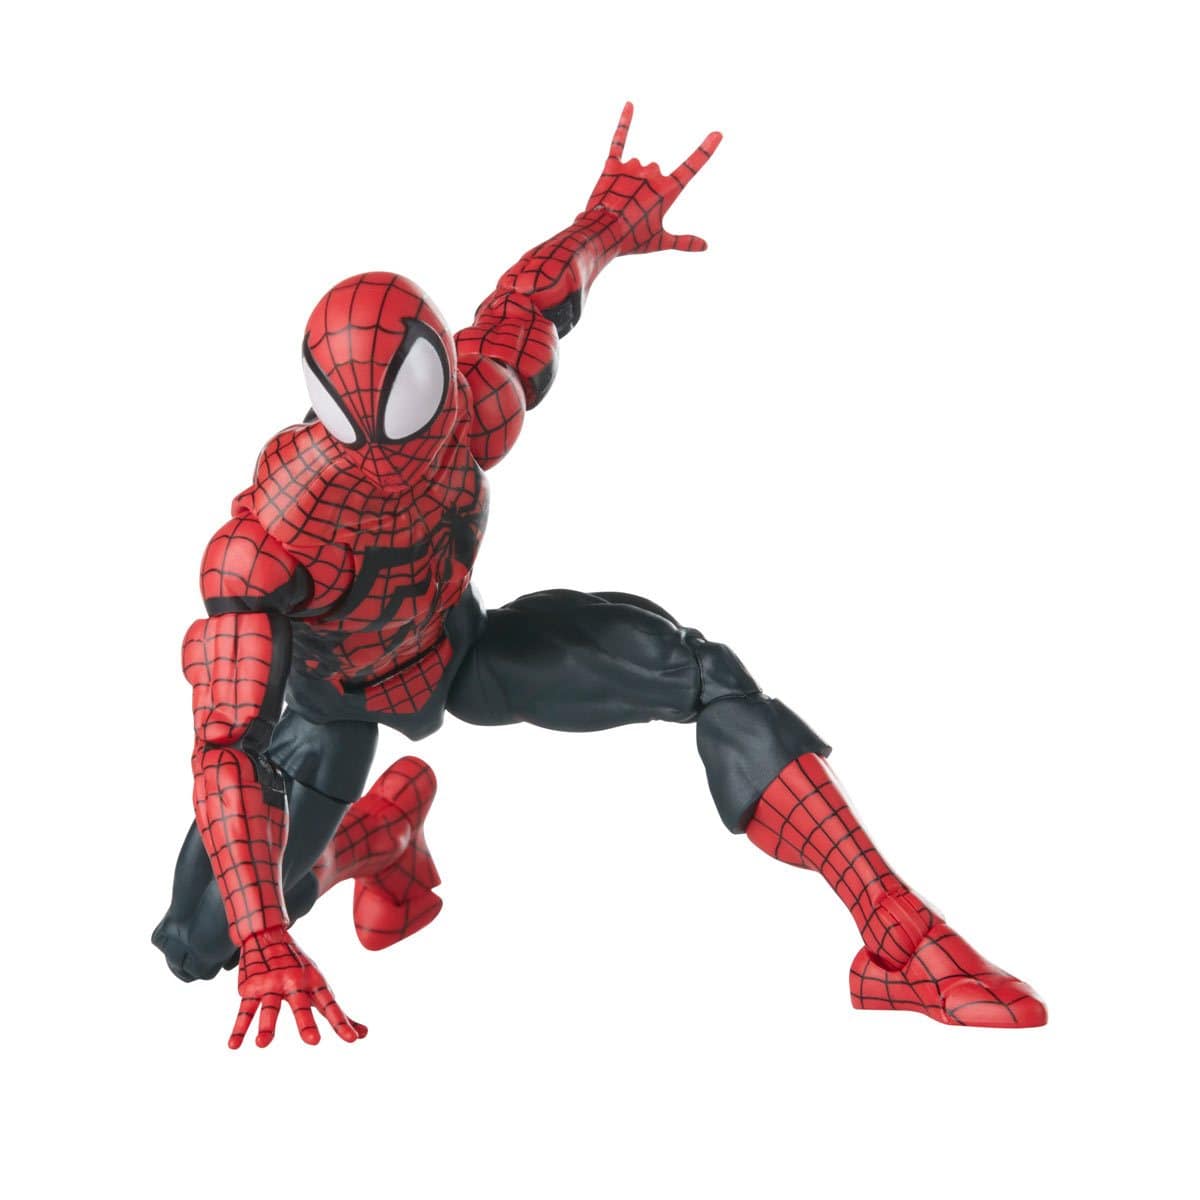 Spider-Man Retro Marvel Legends Ben Reilly Spider-Man 6-Inch Action Figure Spidey Landed Pose